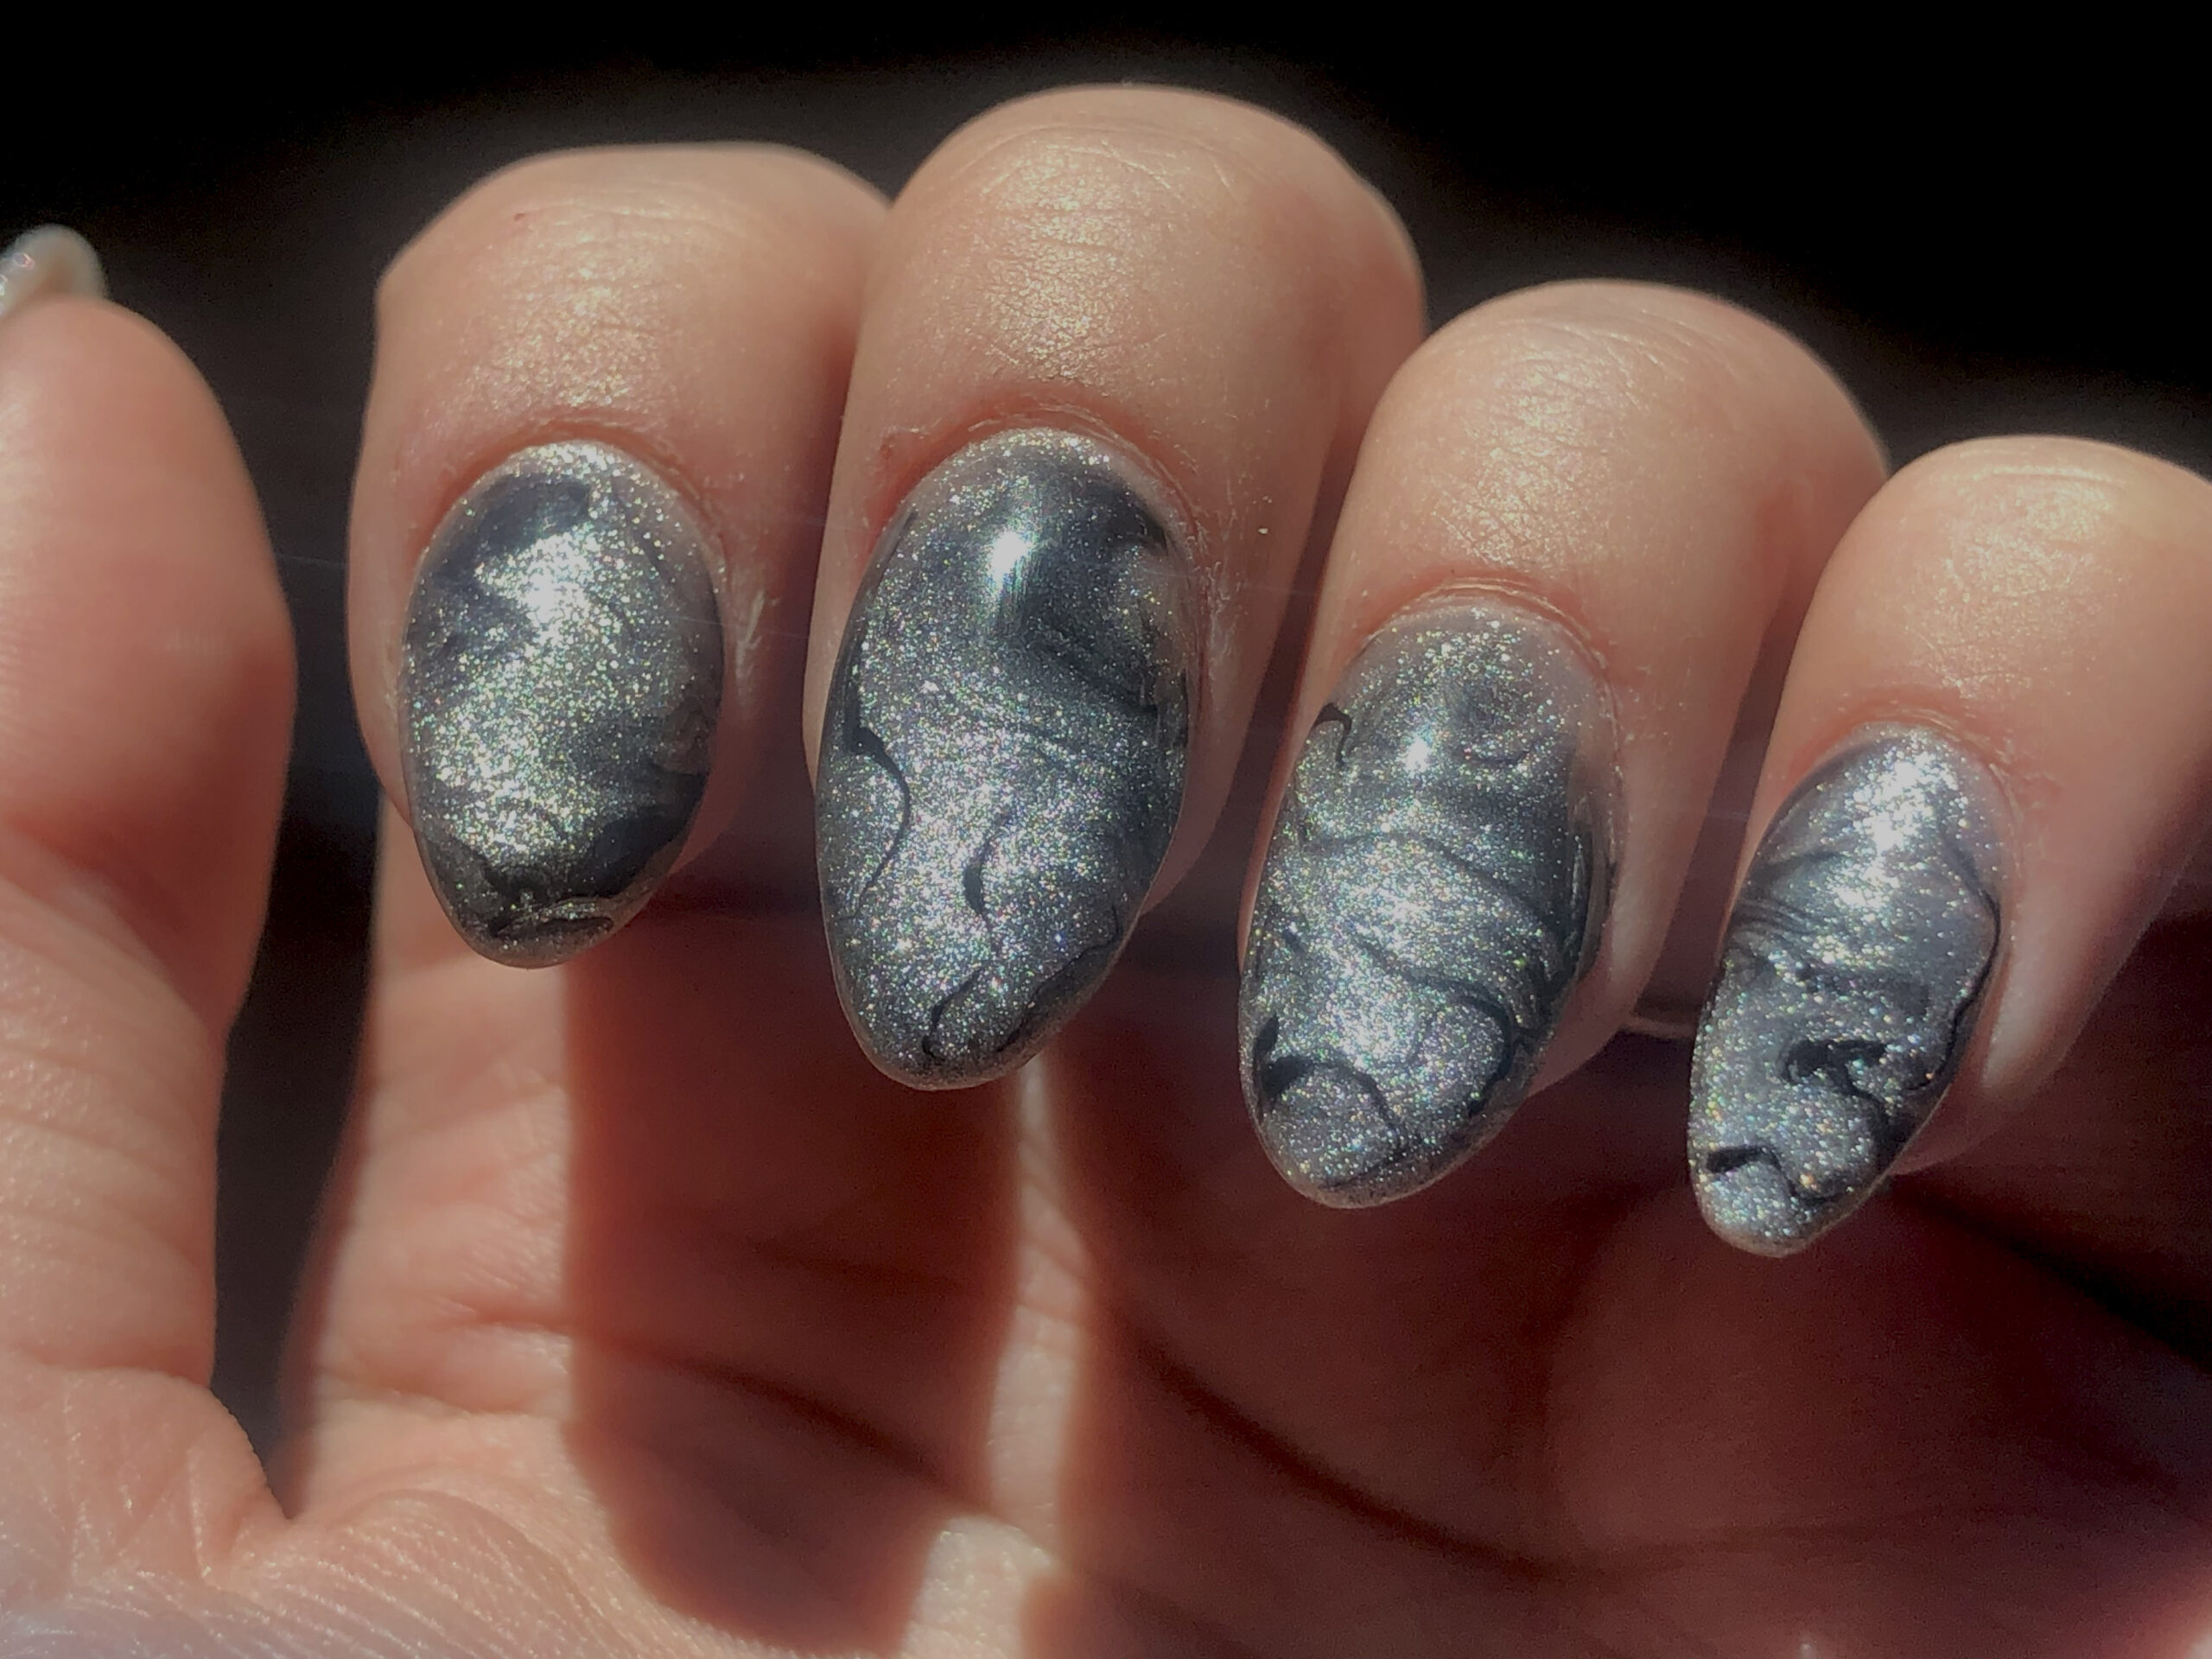 Acrylic almond nails by Sarah a nail artist at D'Licious Nails